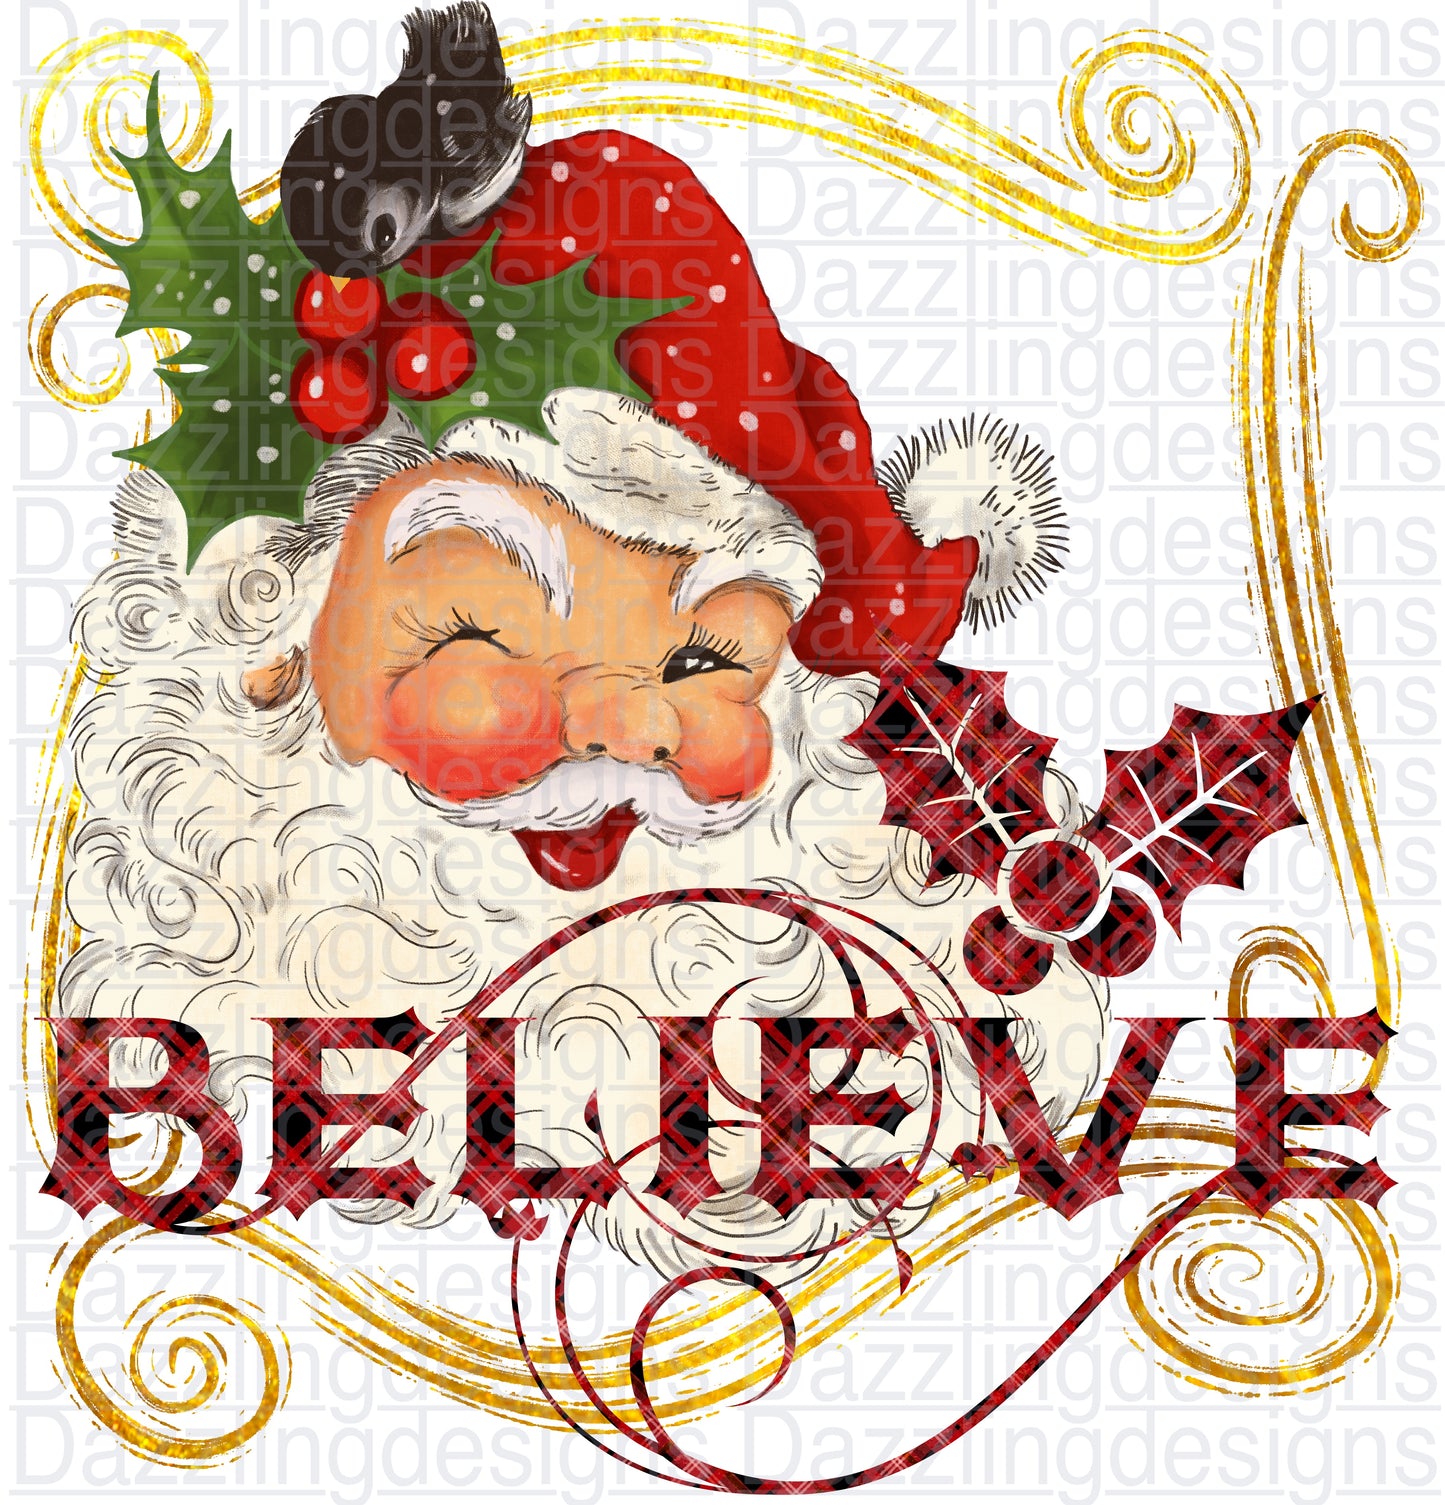 Believe winking Santa